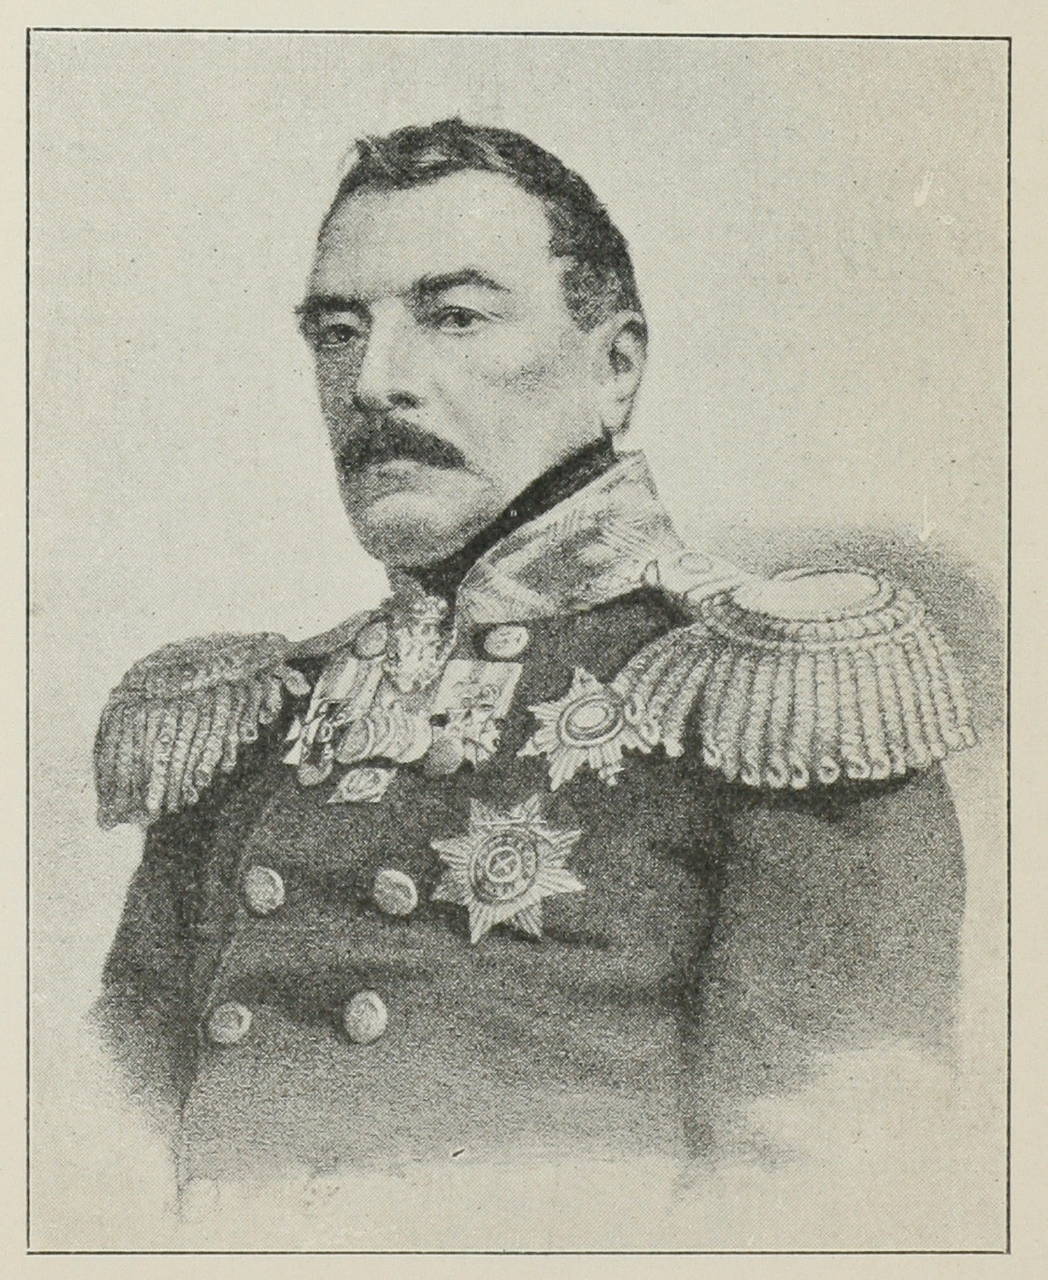 Генералъ отъ инфантеріи князь П. Д. Горчаковъ 2-й.